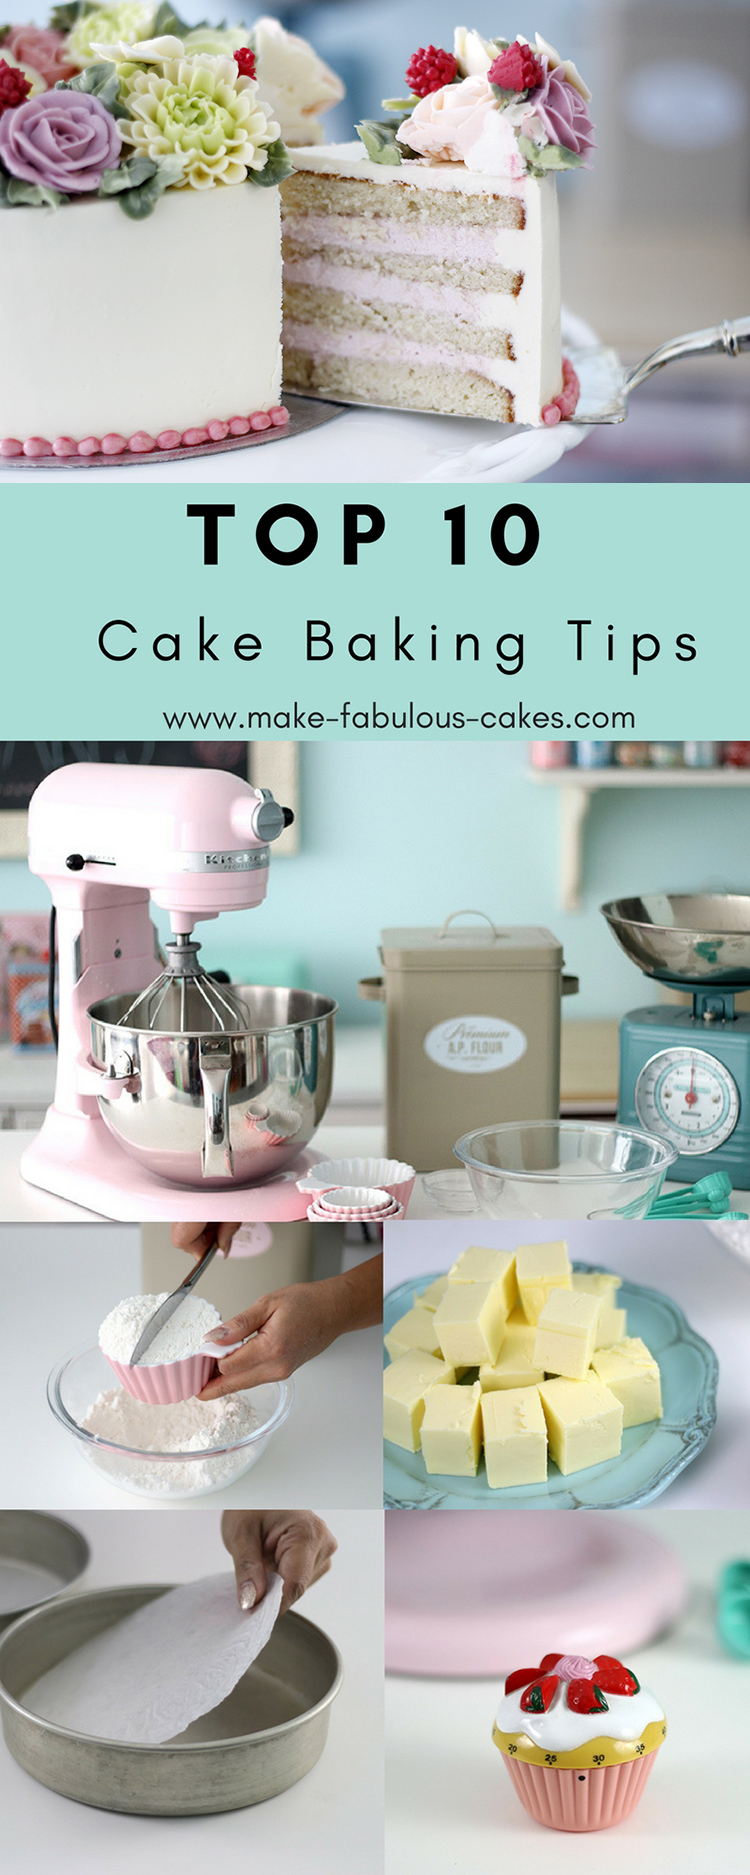 Top 10 Cake Baking Tips